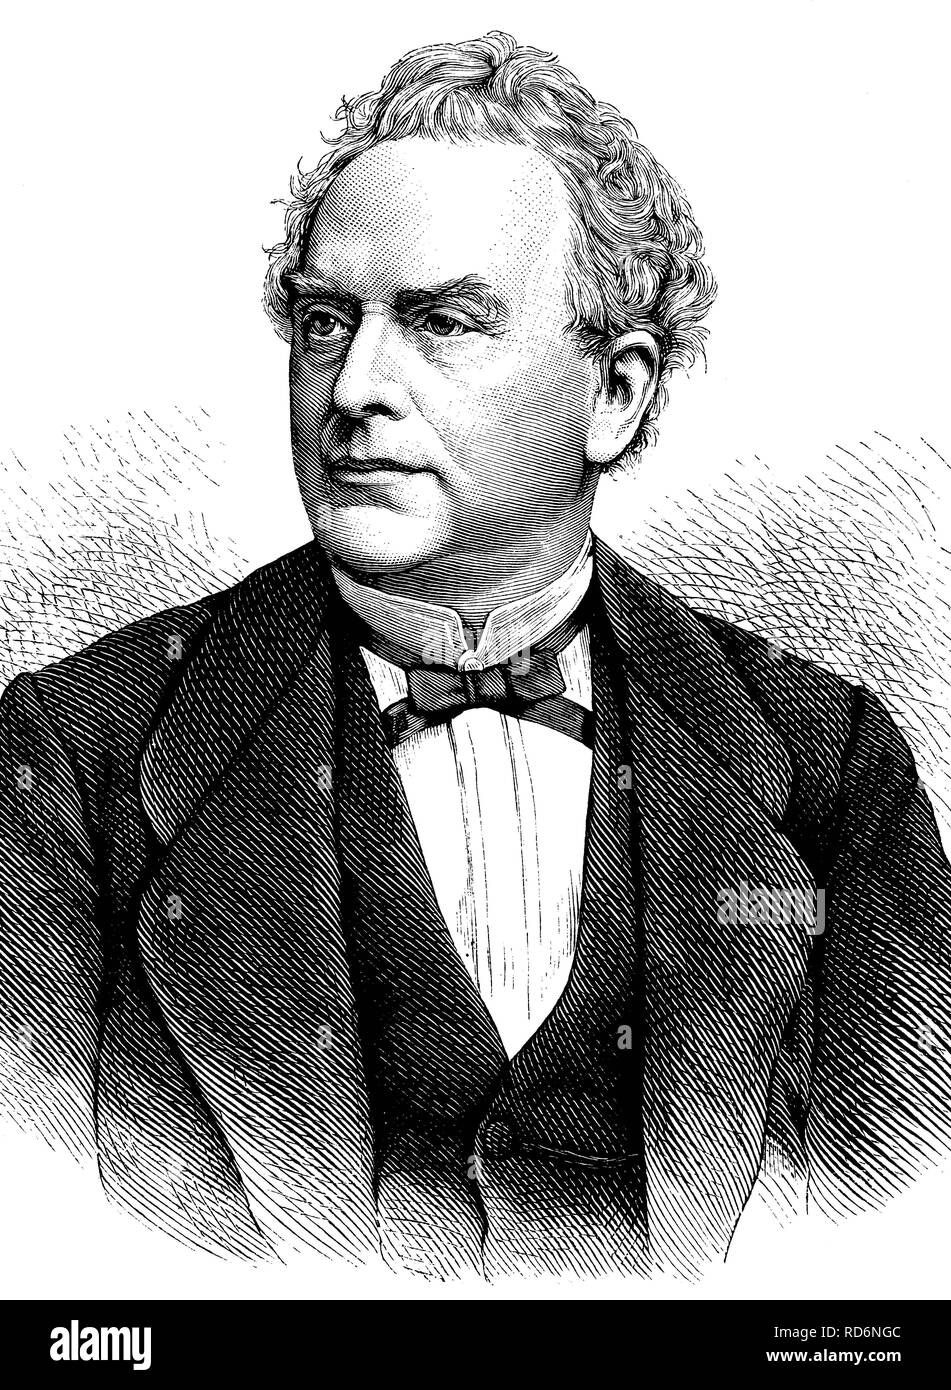 Hubert Joseph Walthère Frère-Orban, 1812-1896, homme d'État belge, illustration historique, vers 1886 Banque D'Images